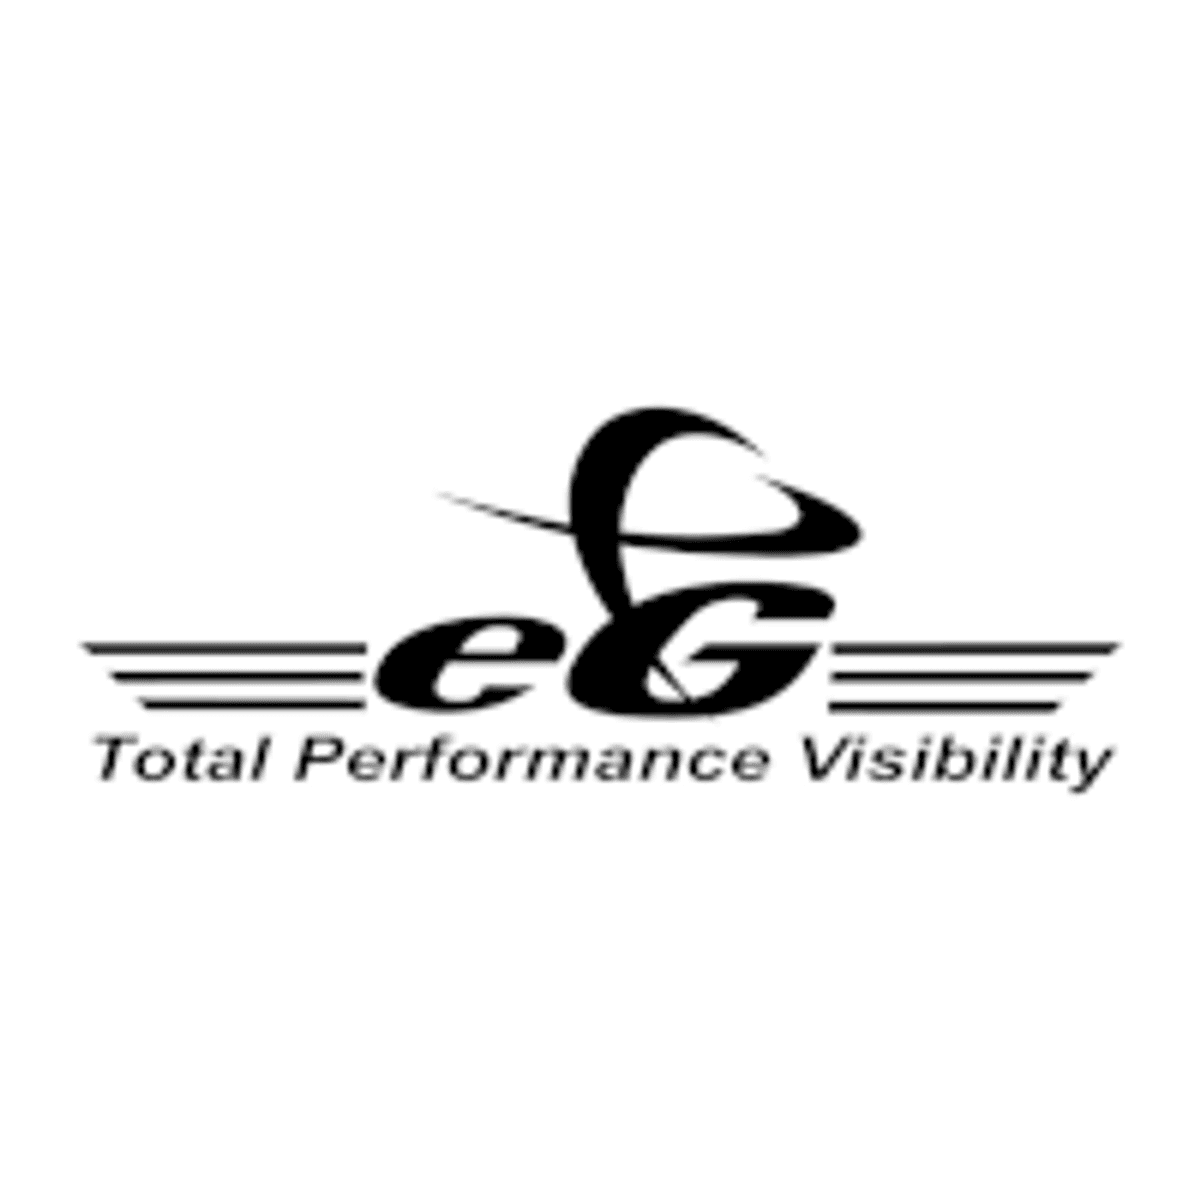 eG Enterprise ondersteunt klanten van SoftwareONE bij performance management image